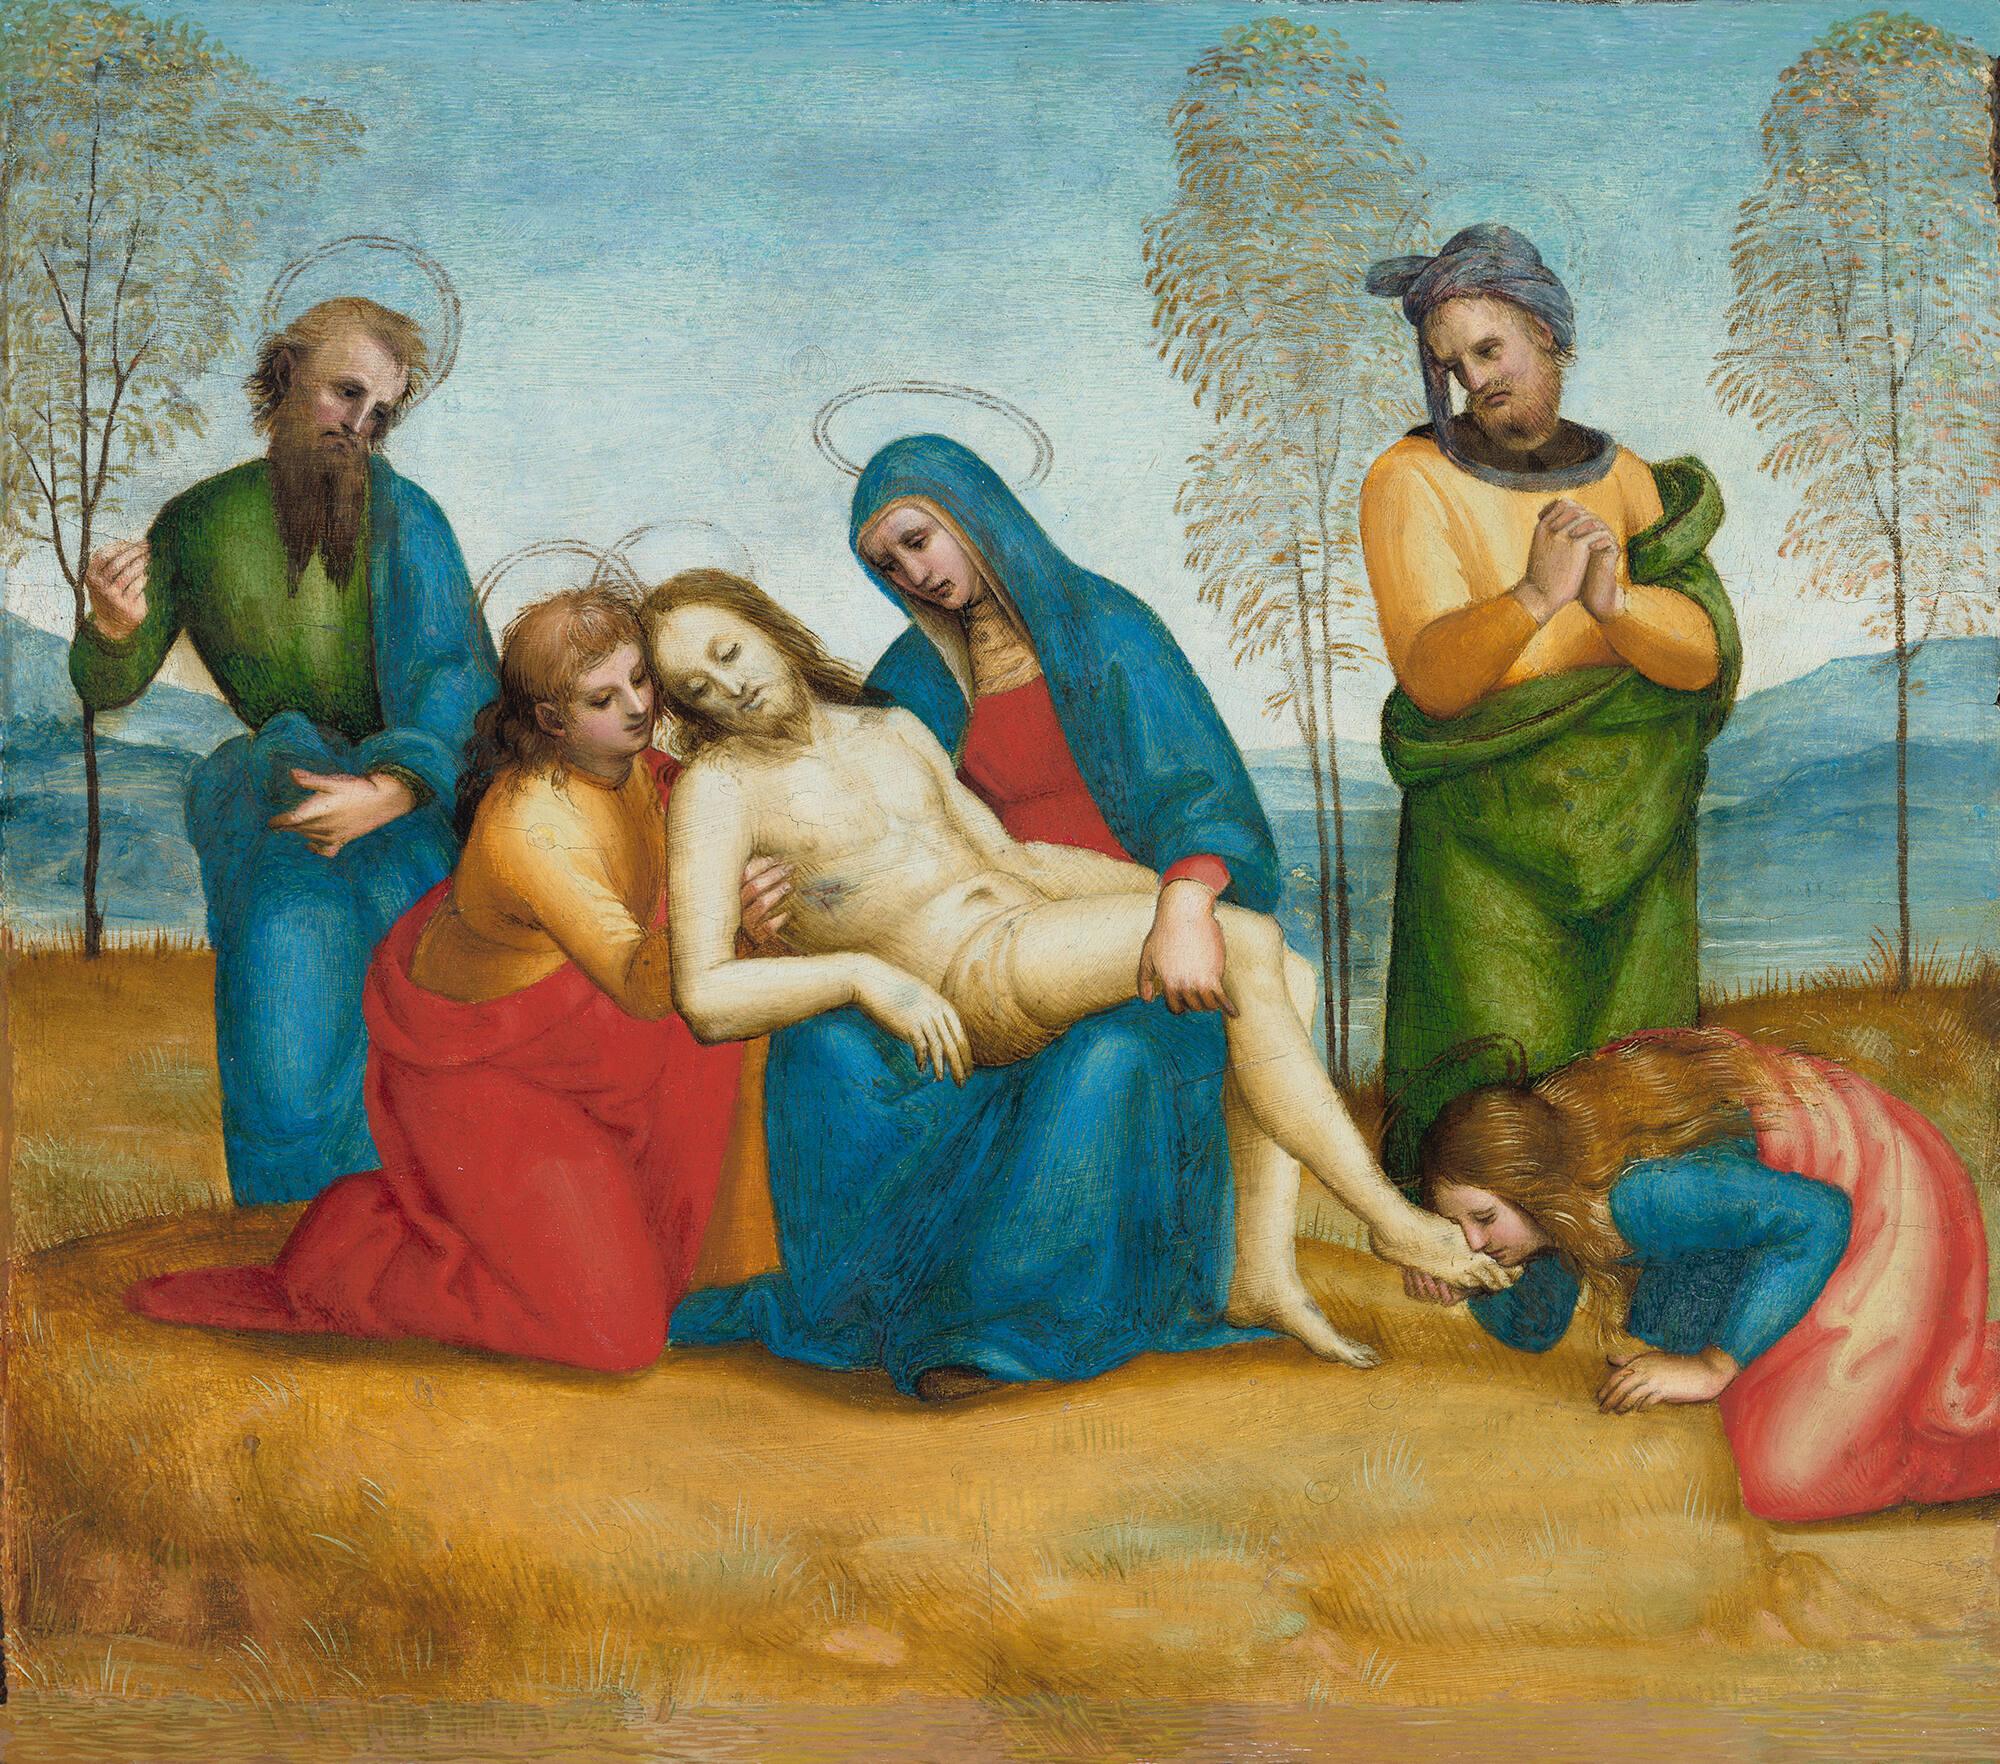 (Urbino, 1483 - 1520, Rome)